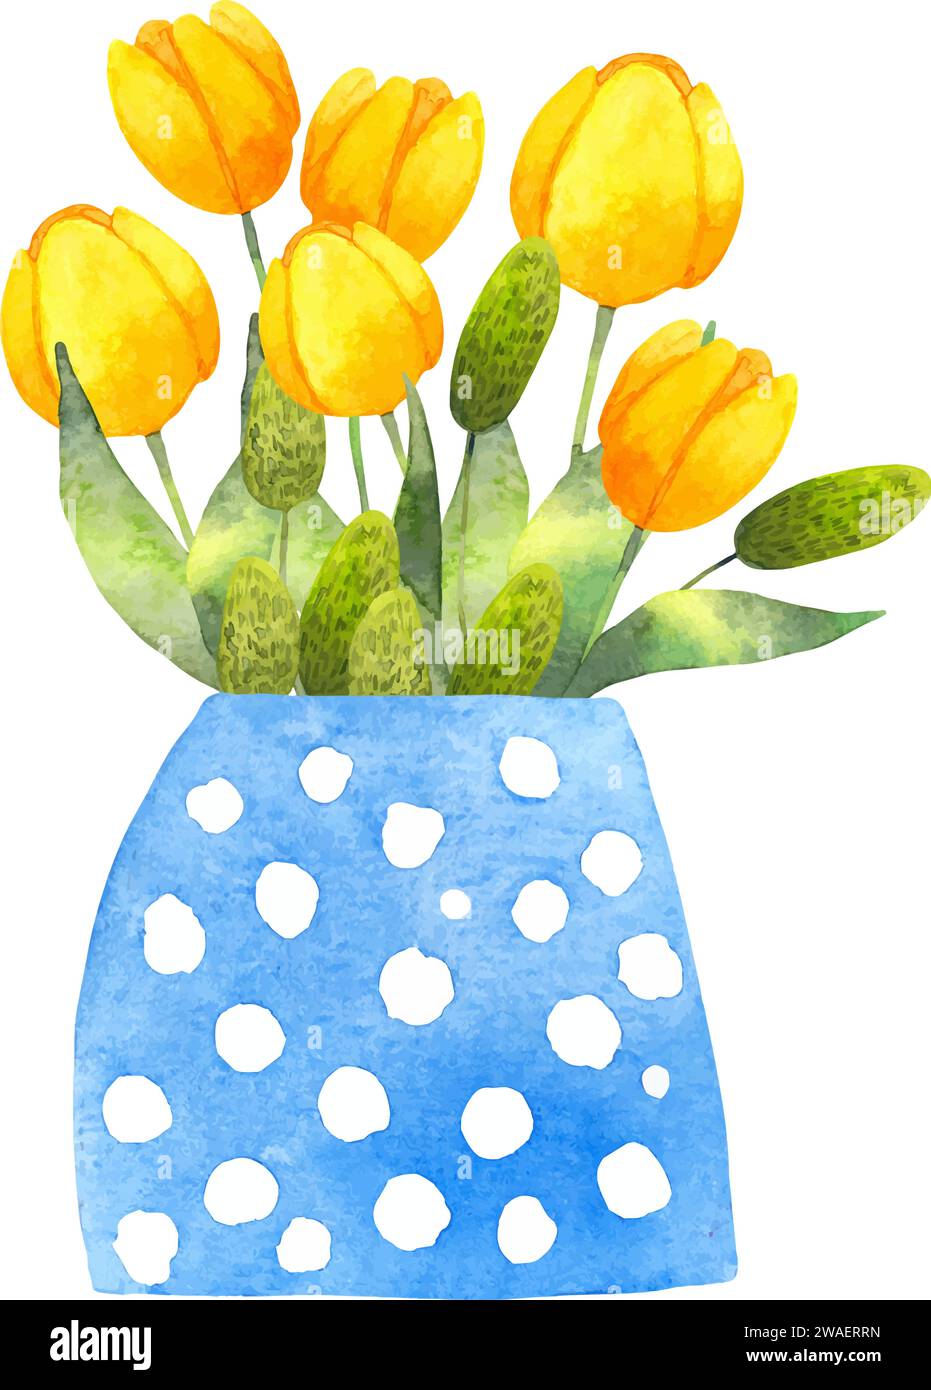 Composizione di tulipani gialli in un vaso.vaso blu con fiori e foglie verdi.illustrazione acquerello.stile semplice stilizzato.bouquet botanico primaverile Illustrazione Vettoriale